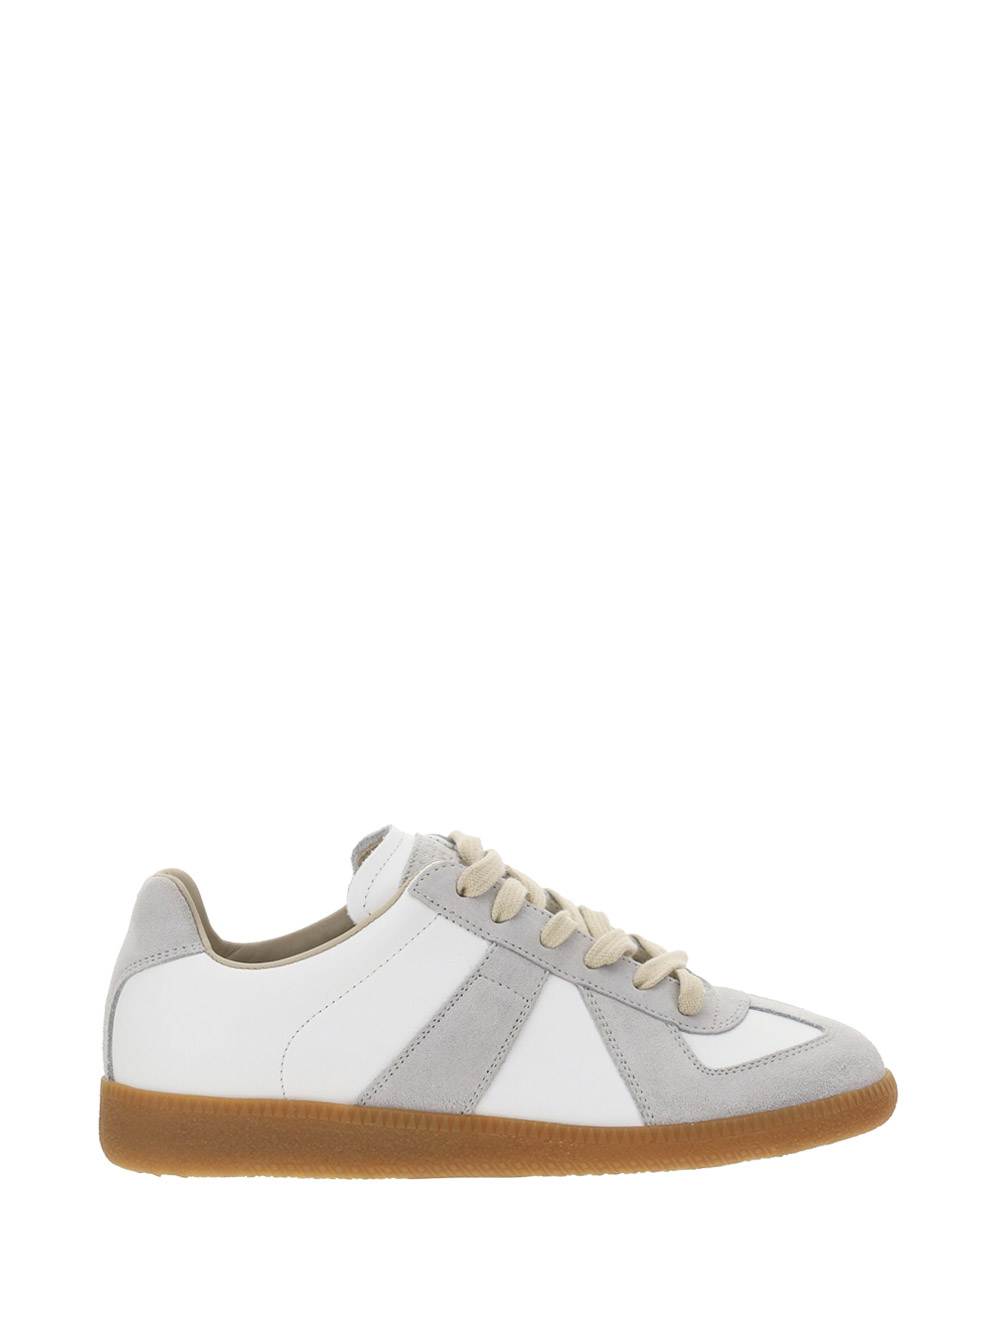 Margiela Sneakers In Dirty White